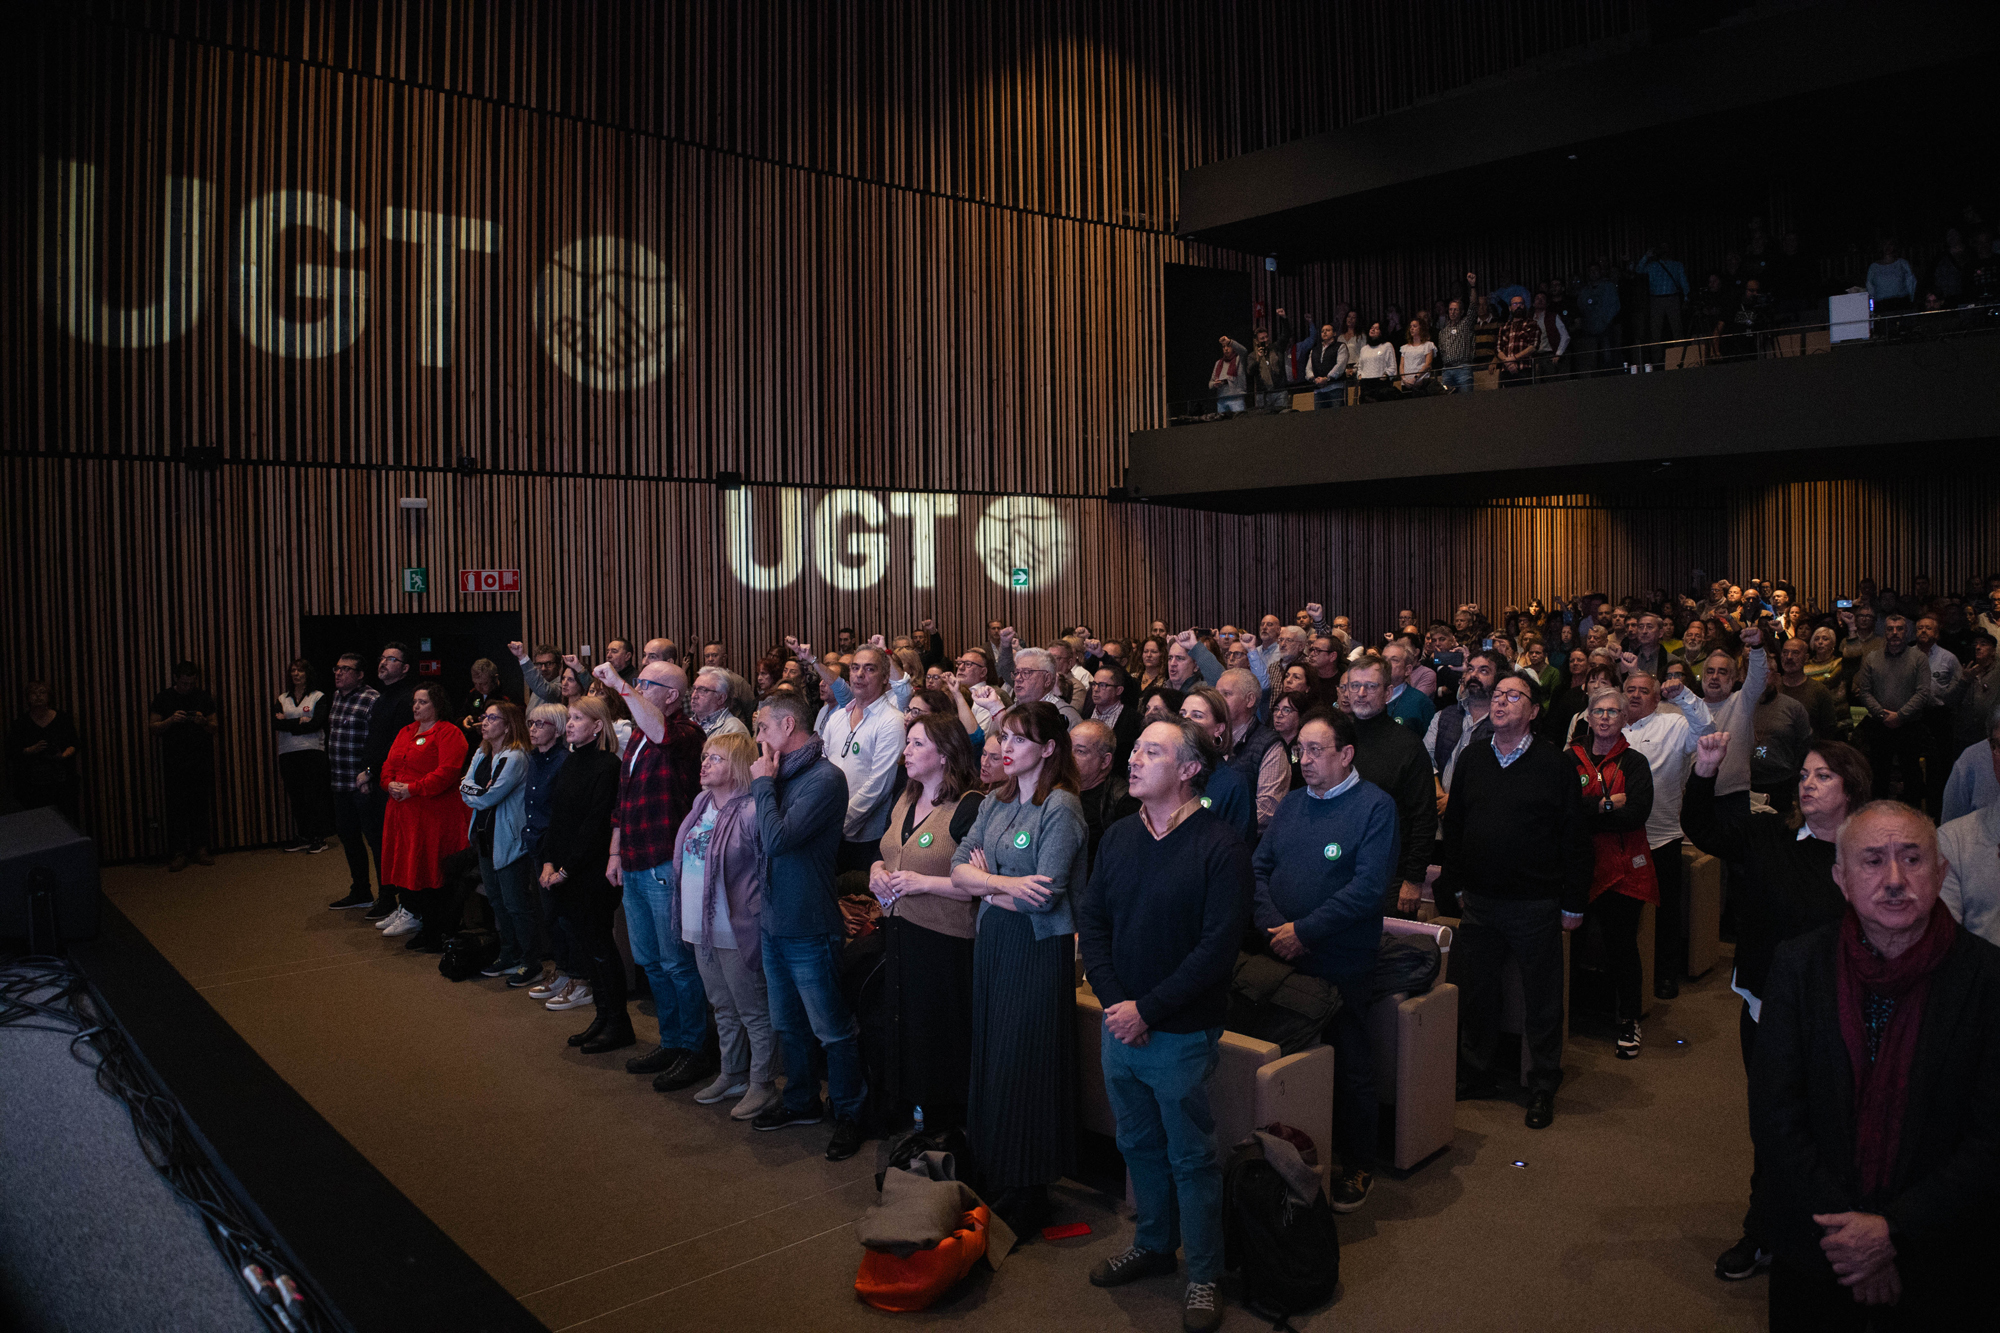 Conferencia Organizativa de UGT